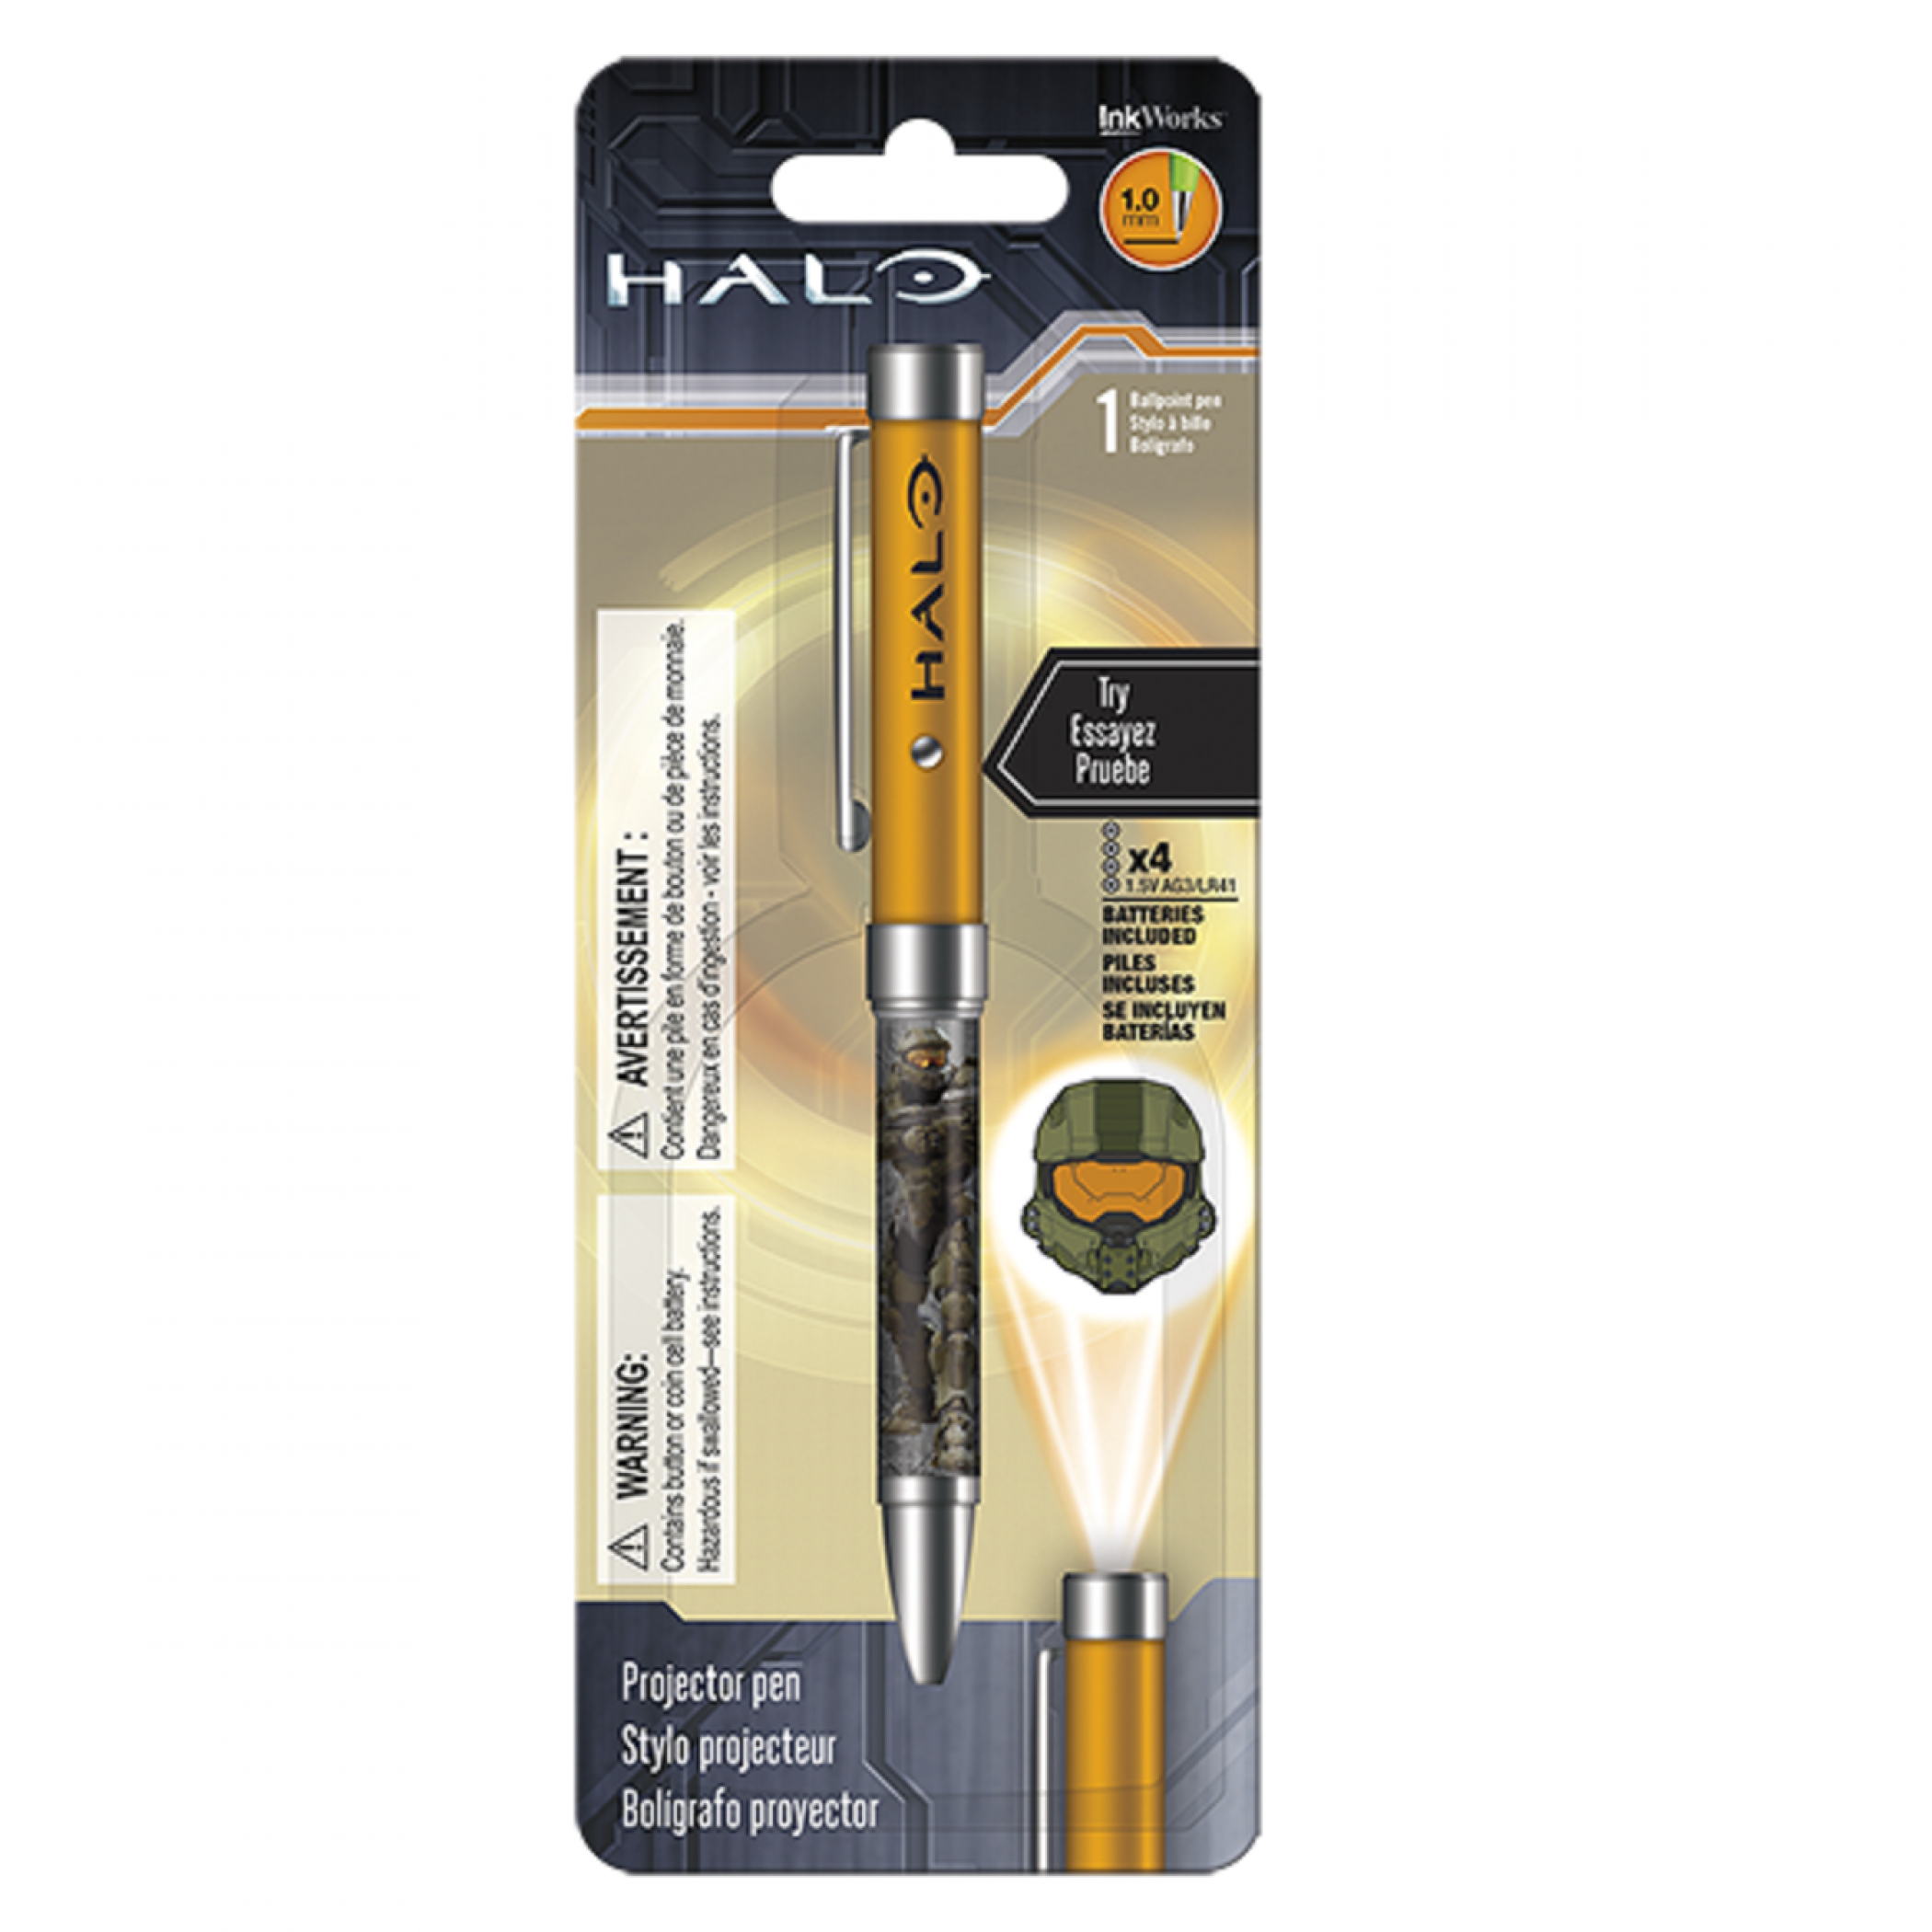 Halo Projector Pen